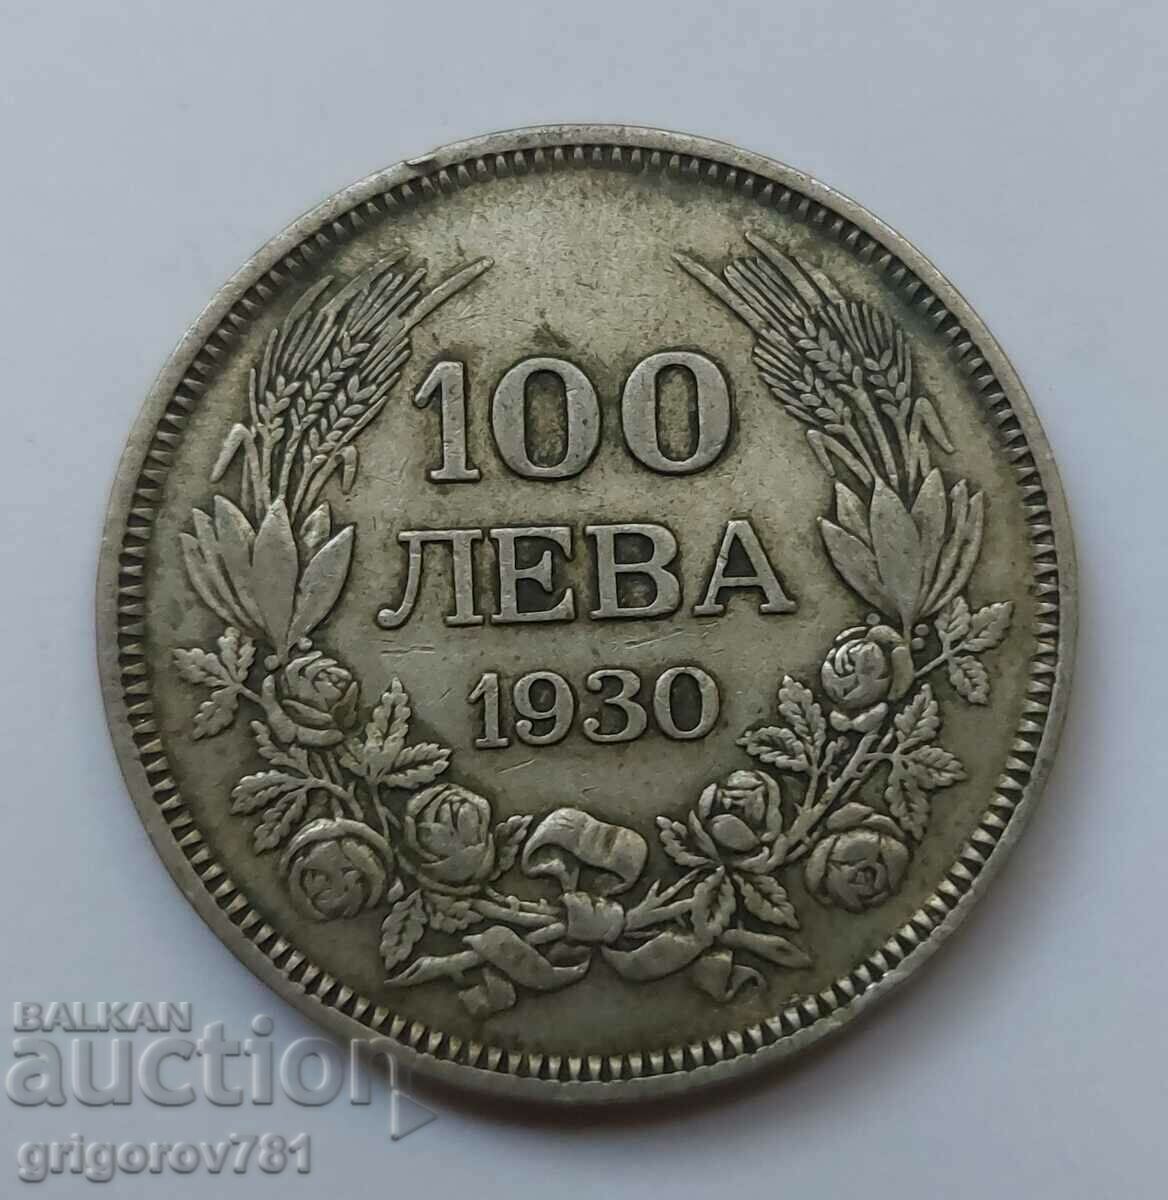 100 leva silver Bulgaria 1930 - silver coin #1